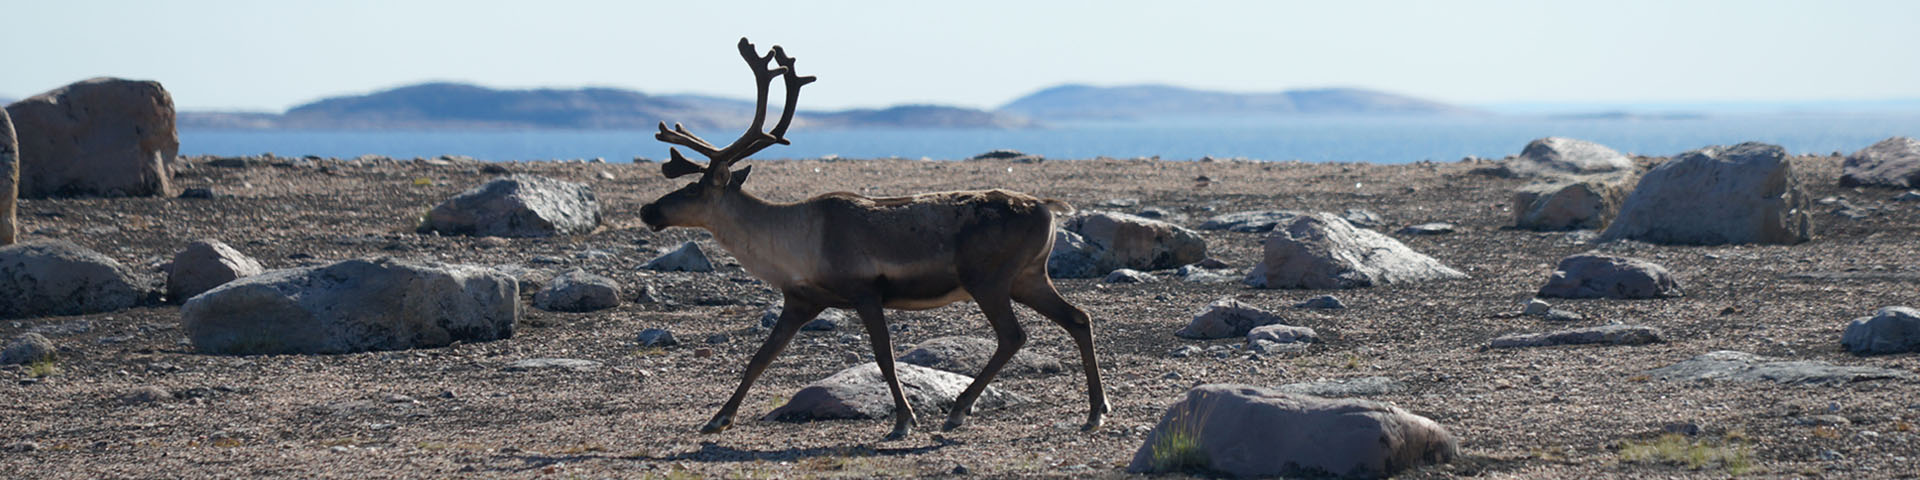 Un caribou marchant dans un paysage de toundra rocheuse